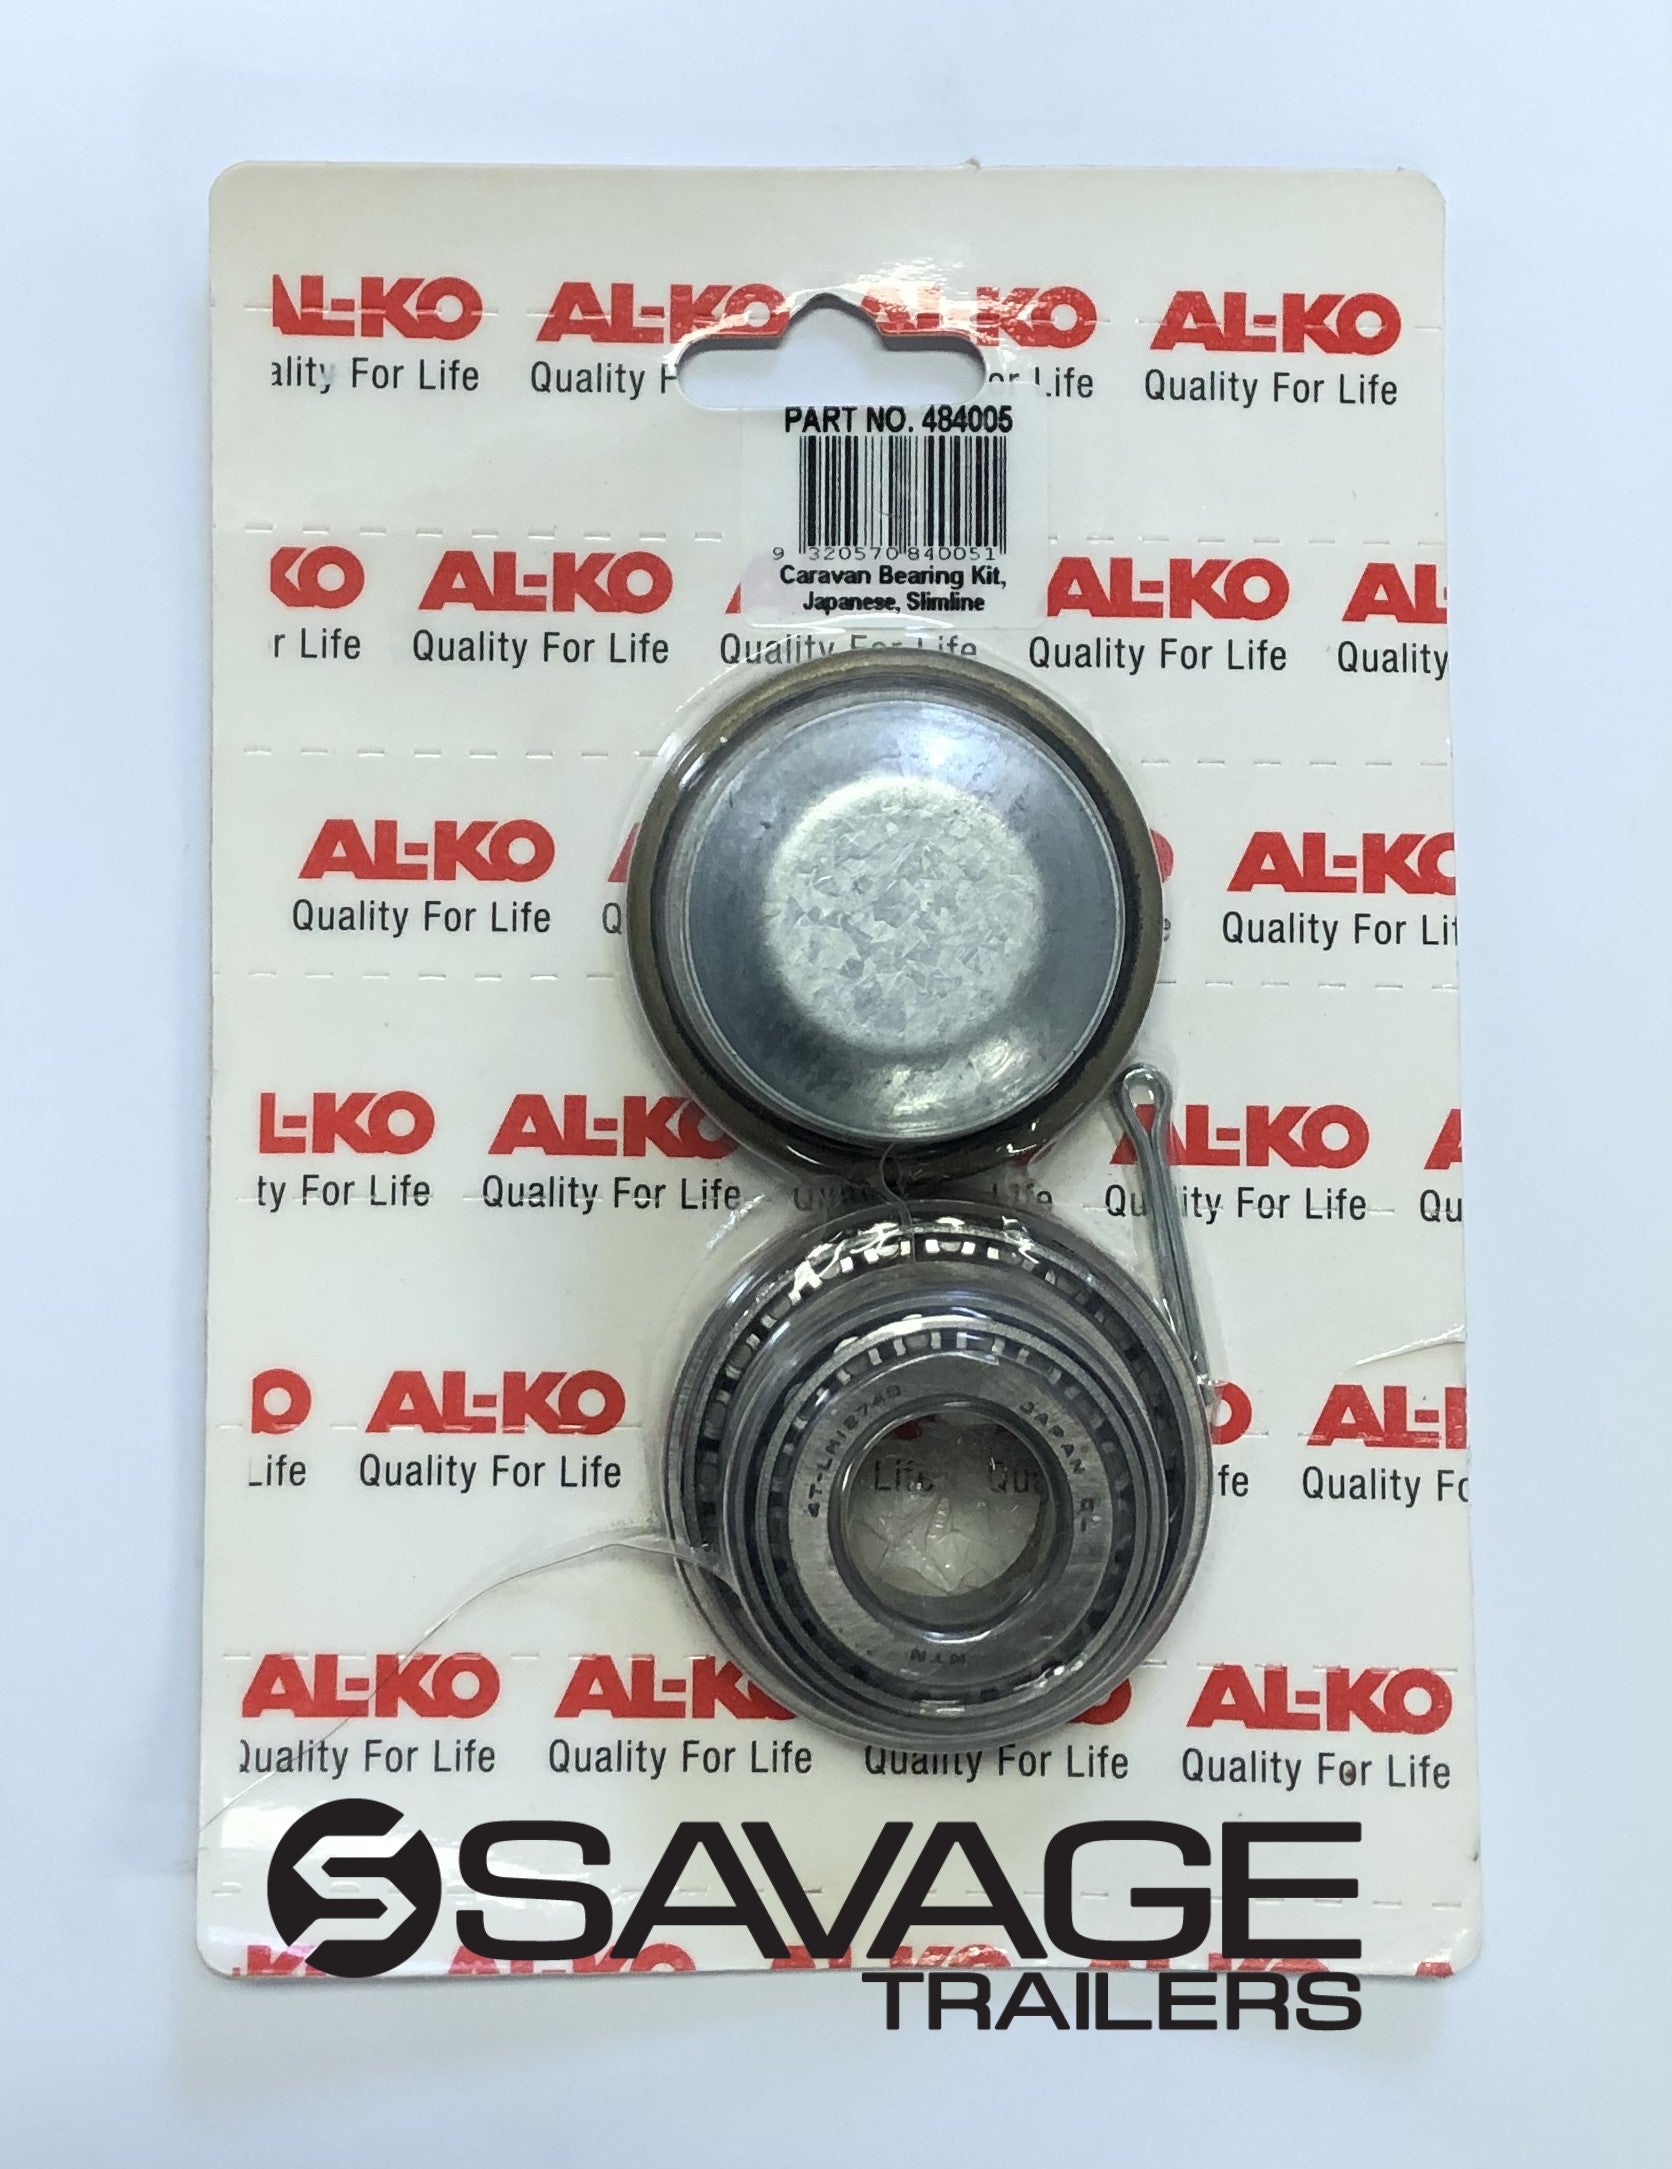 AL-KO Slimline Bearing Kit - Japanese #484005 | Savage Trailers